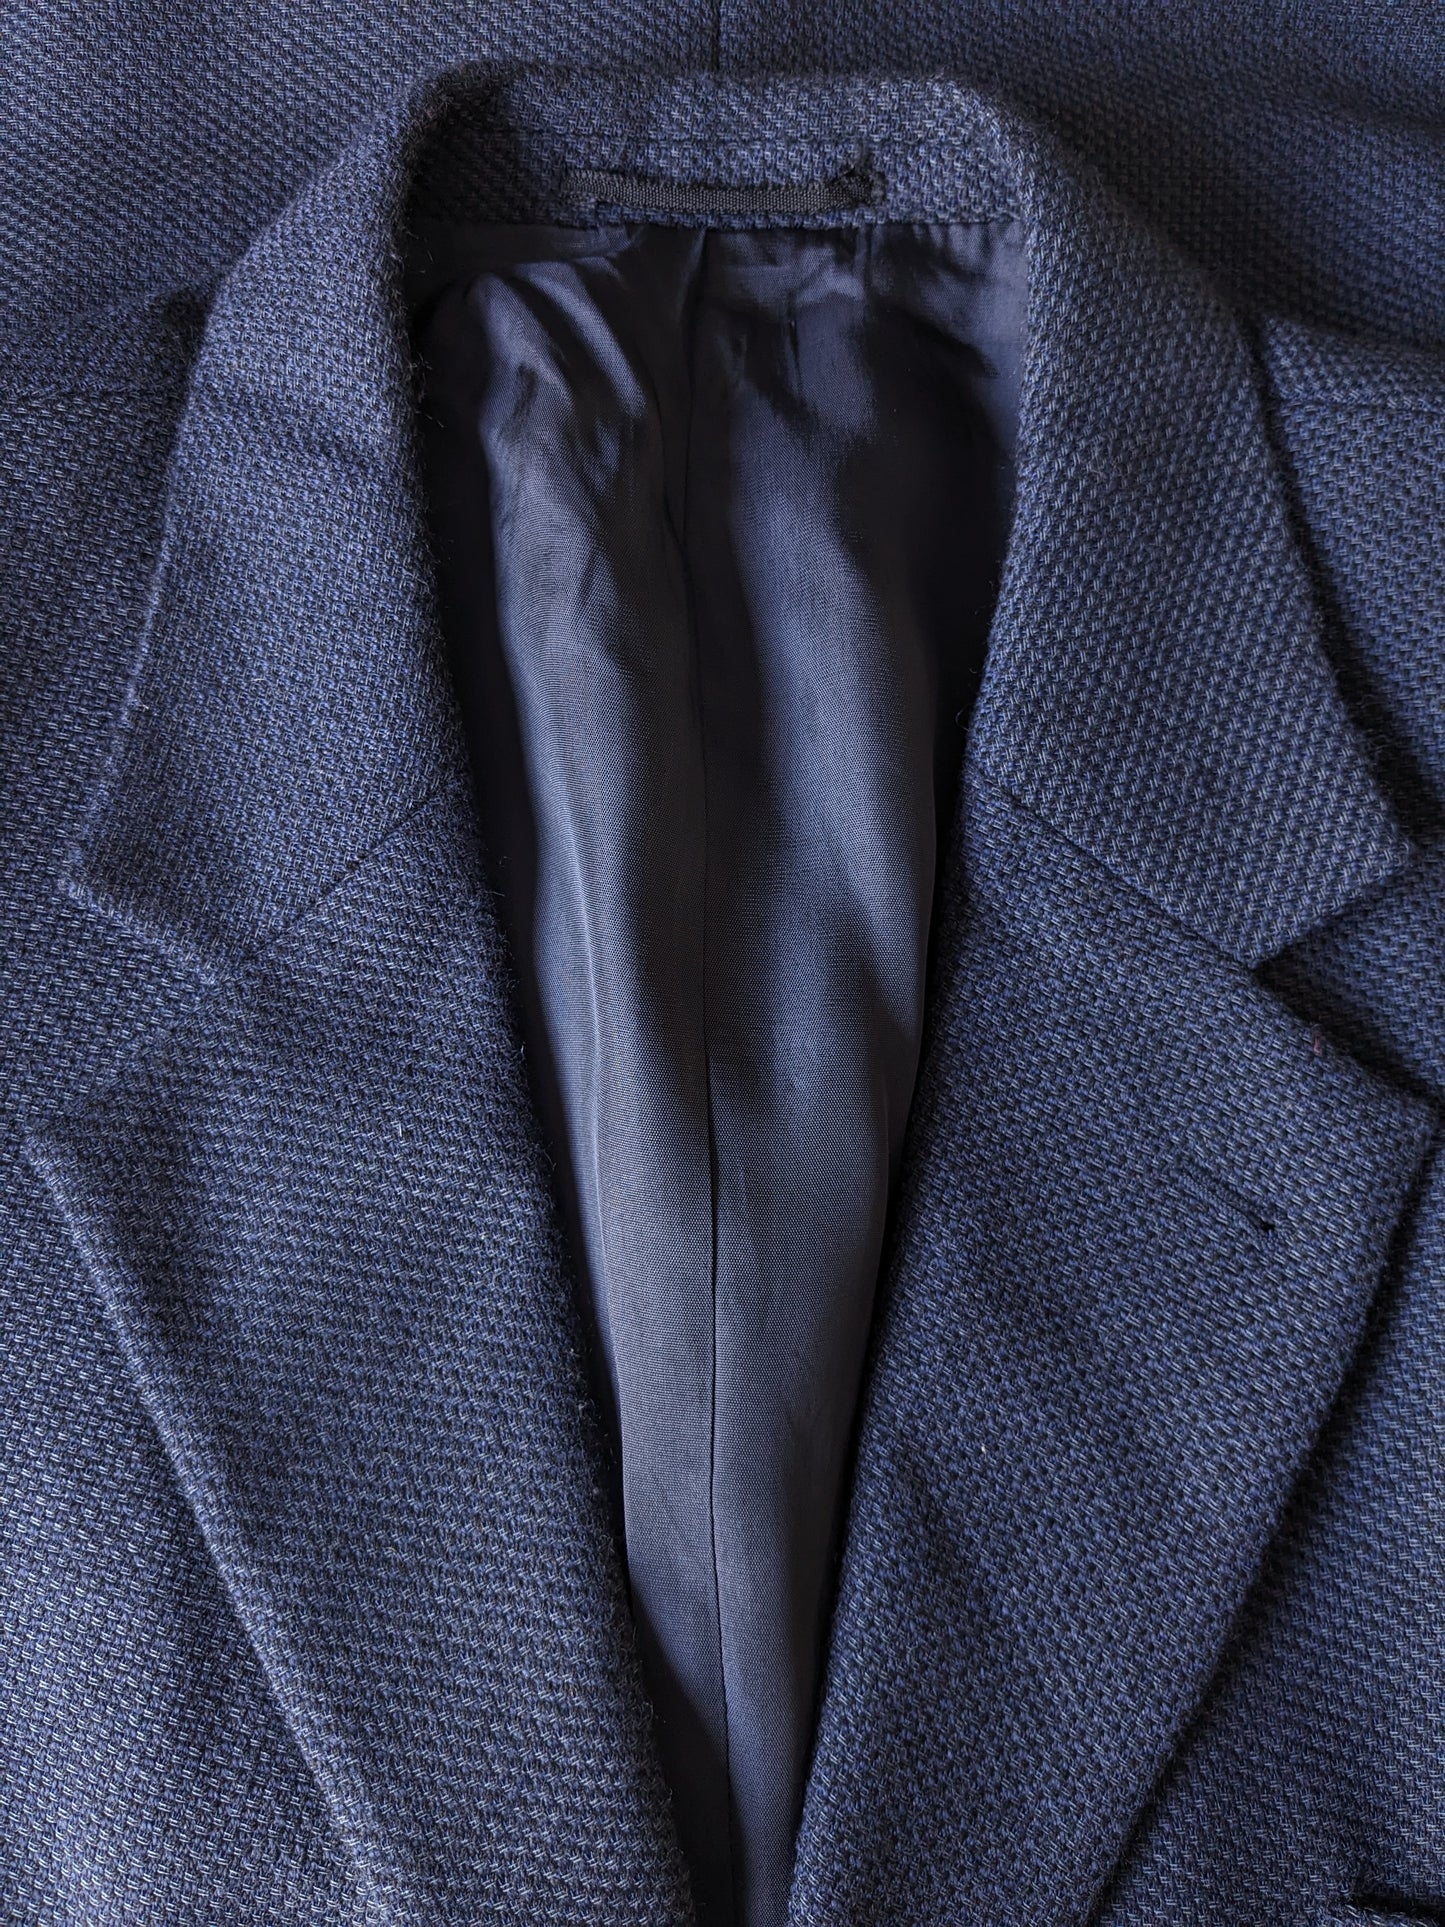 Veste en laine Kreymborg vintage. Bleu noir mélangé. Taille 27 (54 / L).